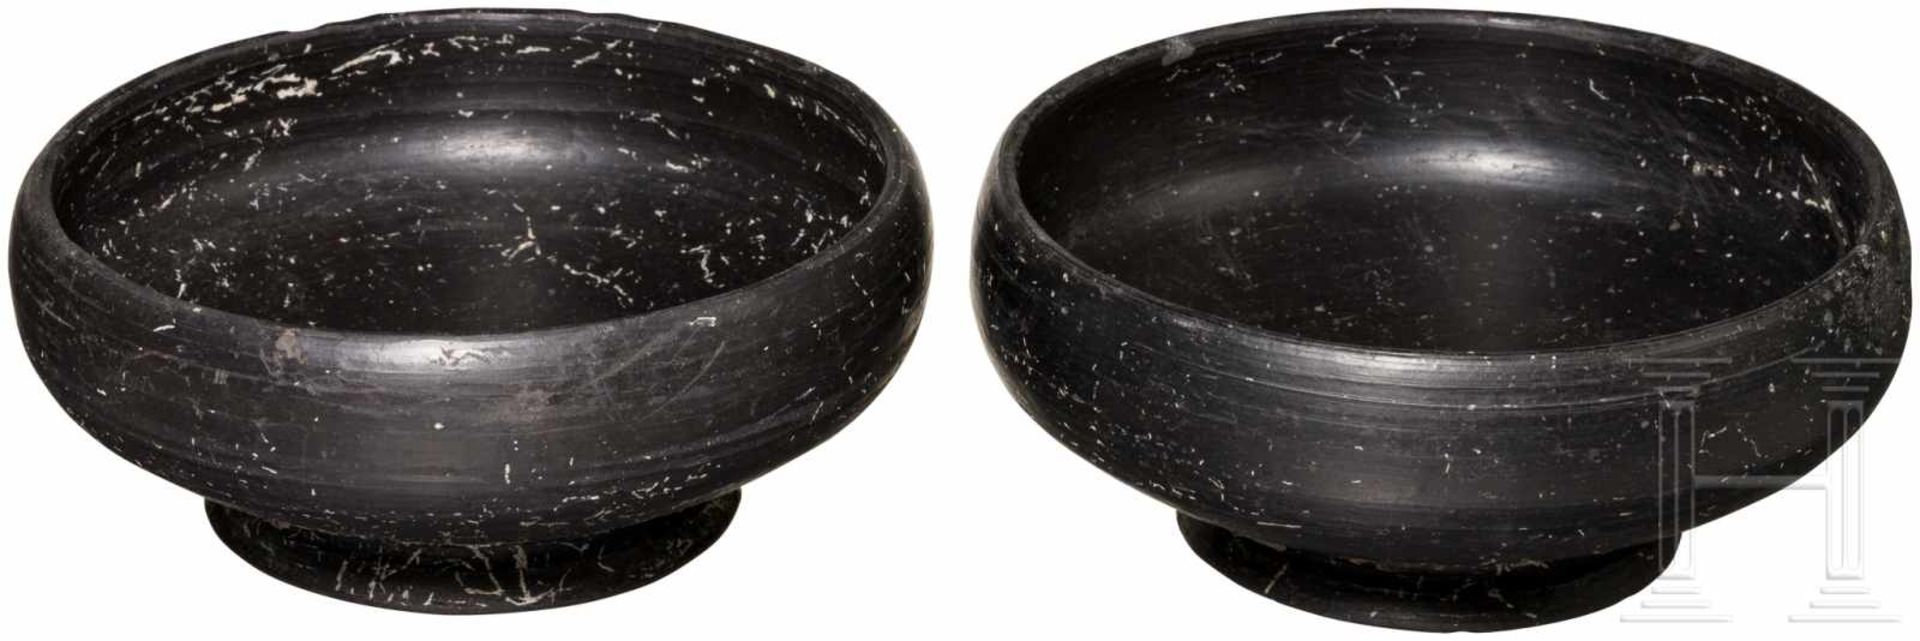 Zwei Bucchero-Schalen, 6. Jhdt. v. Chr.Zwei unverzierte, kleine Schalen mit Standring. Vollständig - Bild 2 aus 2